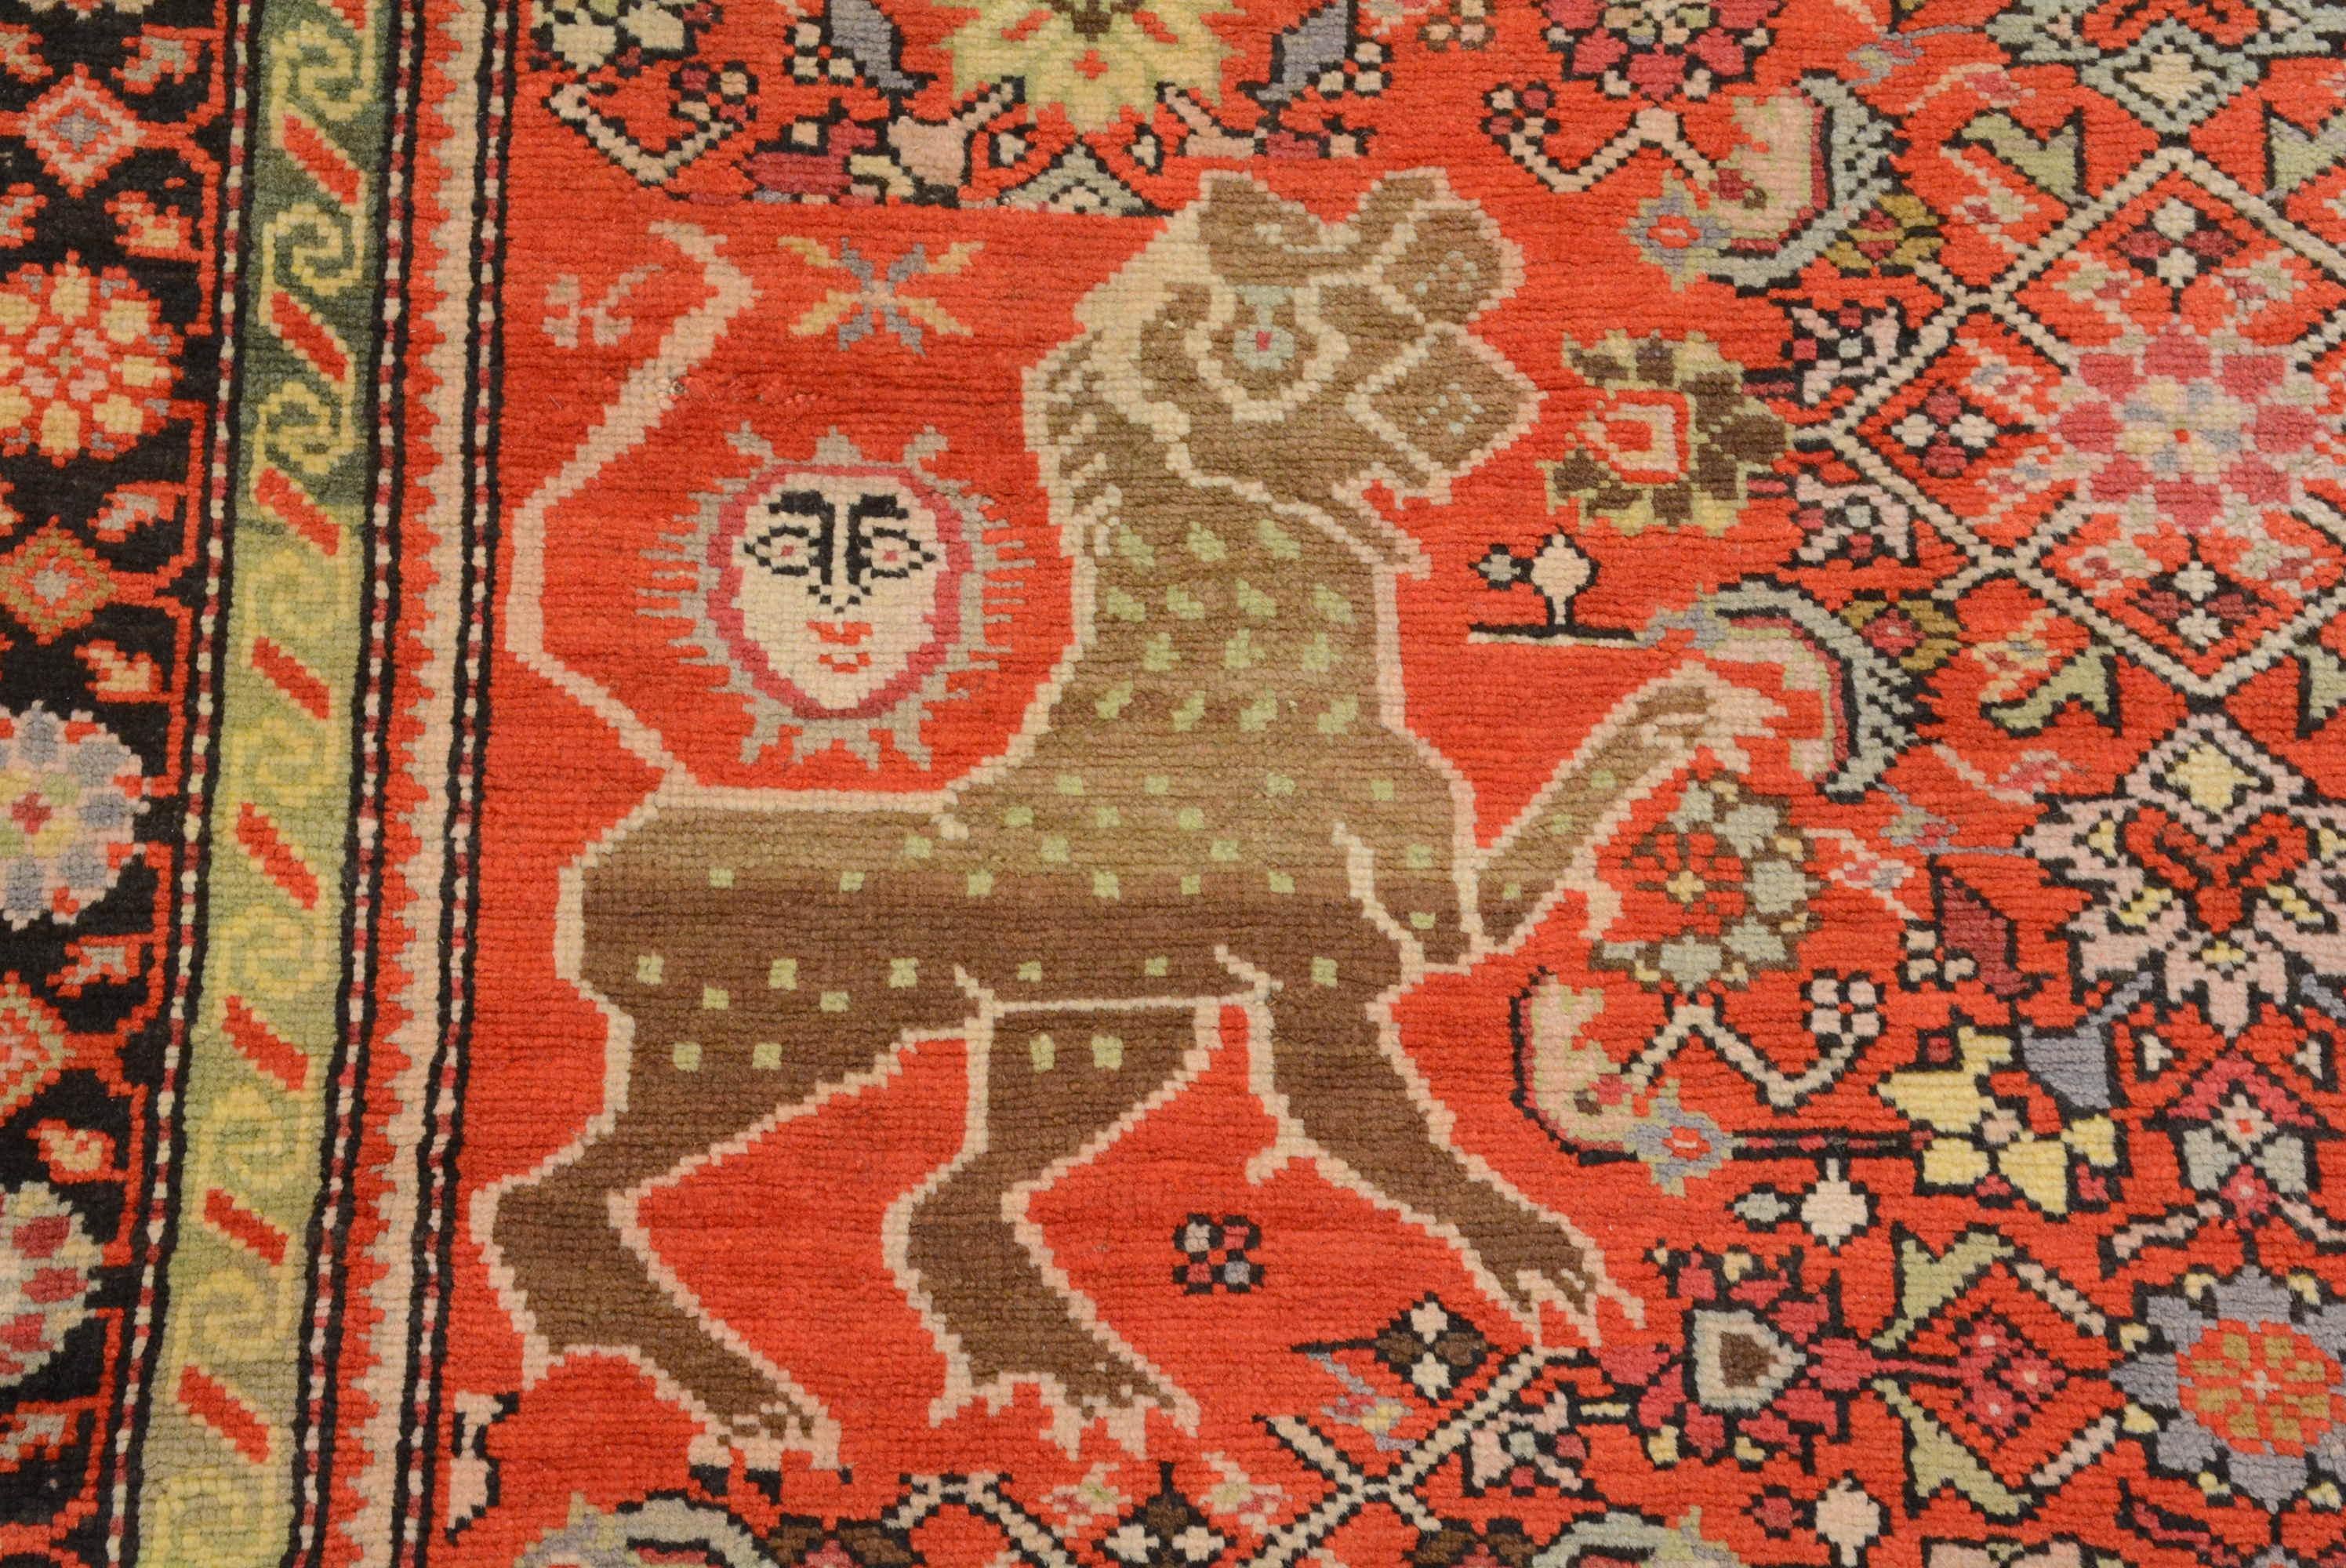 In der Region Karabagh im südlichen Kaukasus werden seit dem 13. Jahrhundert Teppiche hergestellt. Es ist ein Gebiet, das von christlichen Armeniern, Kurden, aserbaidschanischen Türken und Muslimen bewohnt wird. Die Teppichproduktion entwickelte